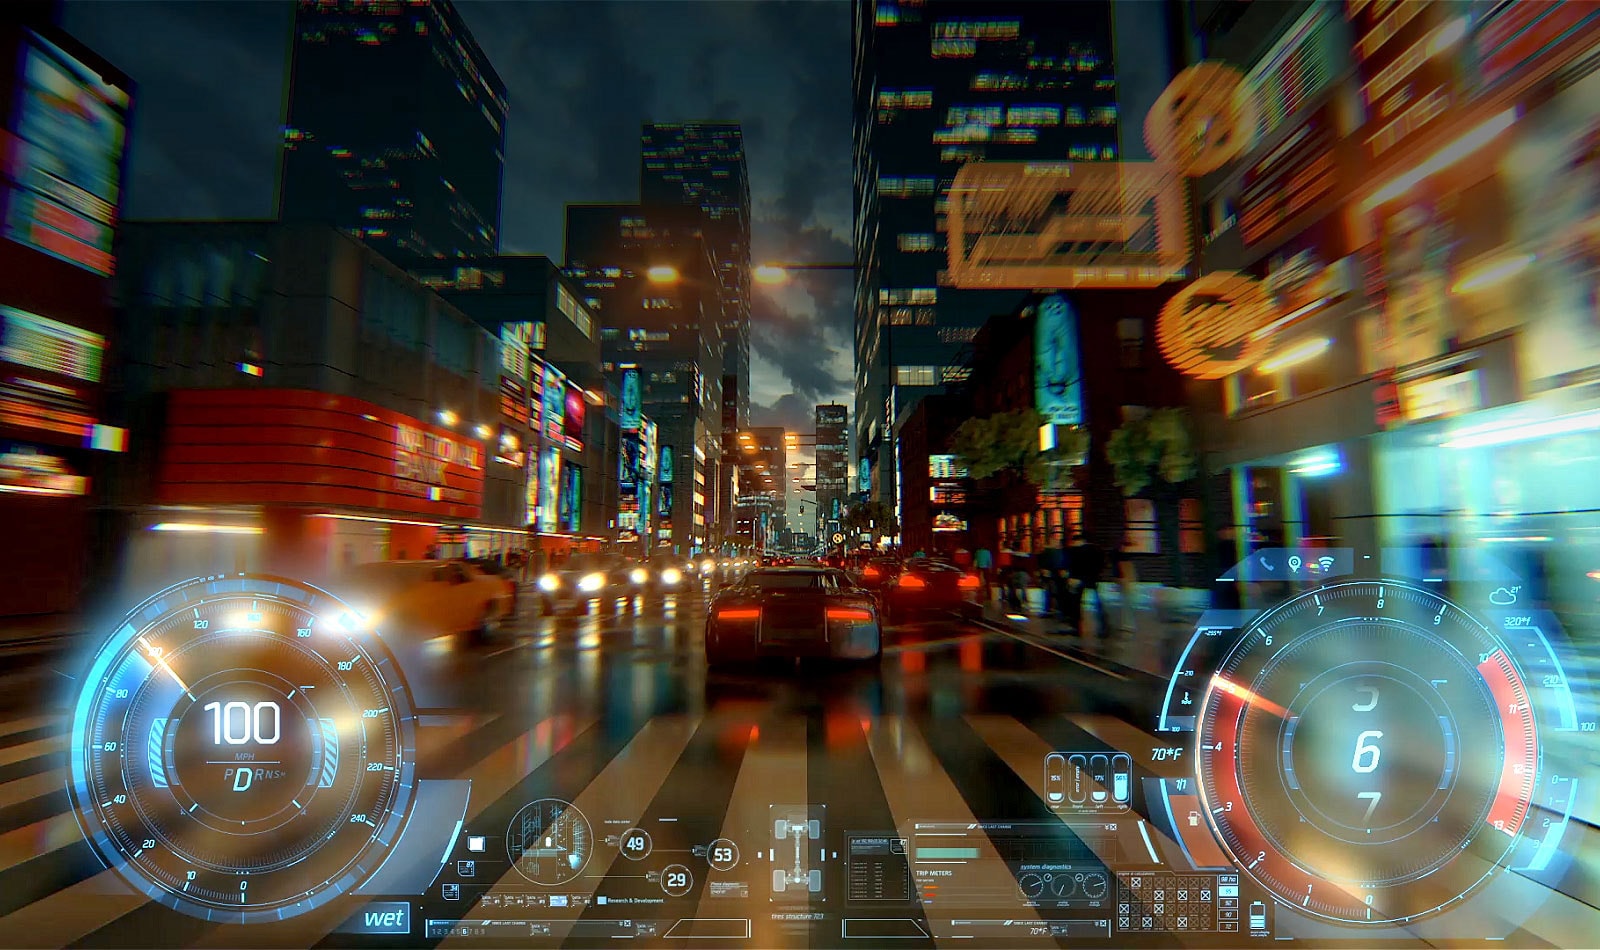 Une vidéo suivant une voiture par derrière dans un jeu vidéo alors qu'elle traverse une rue de ville bien éclairée au crépuscule.